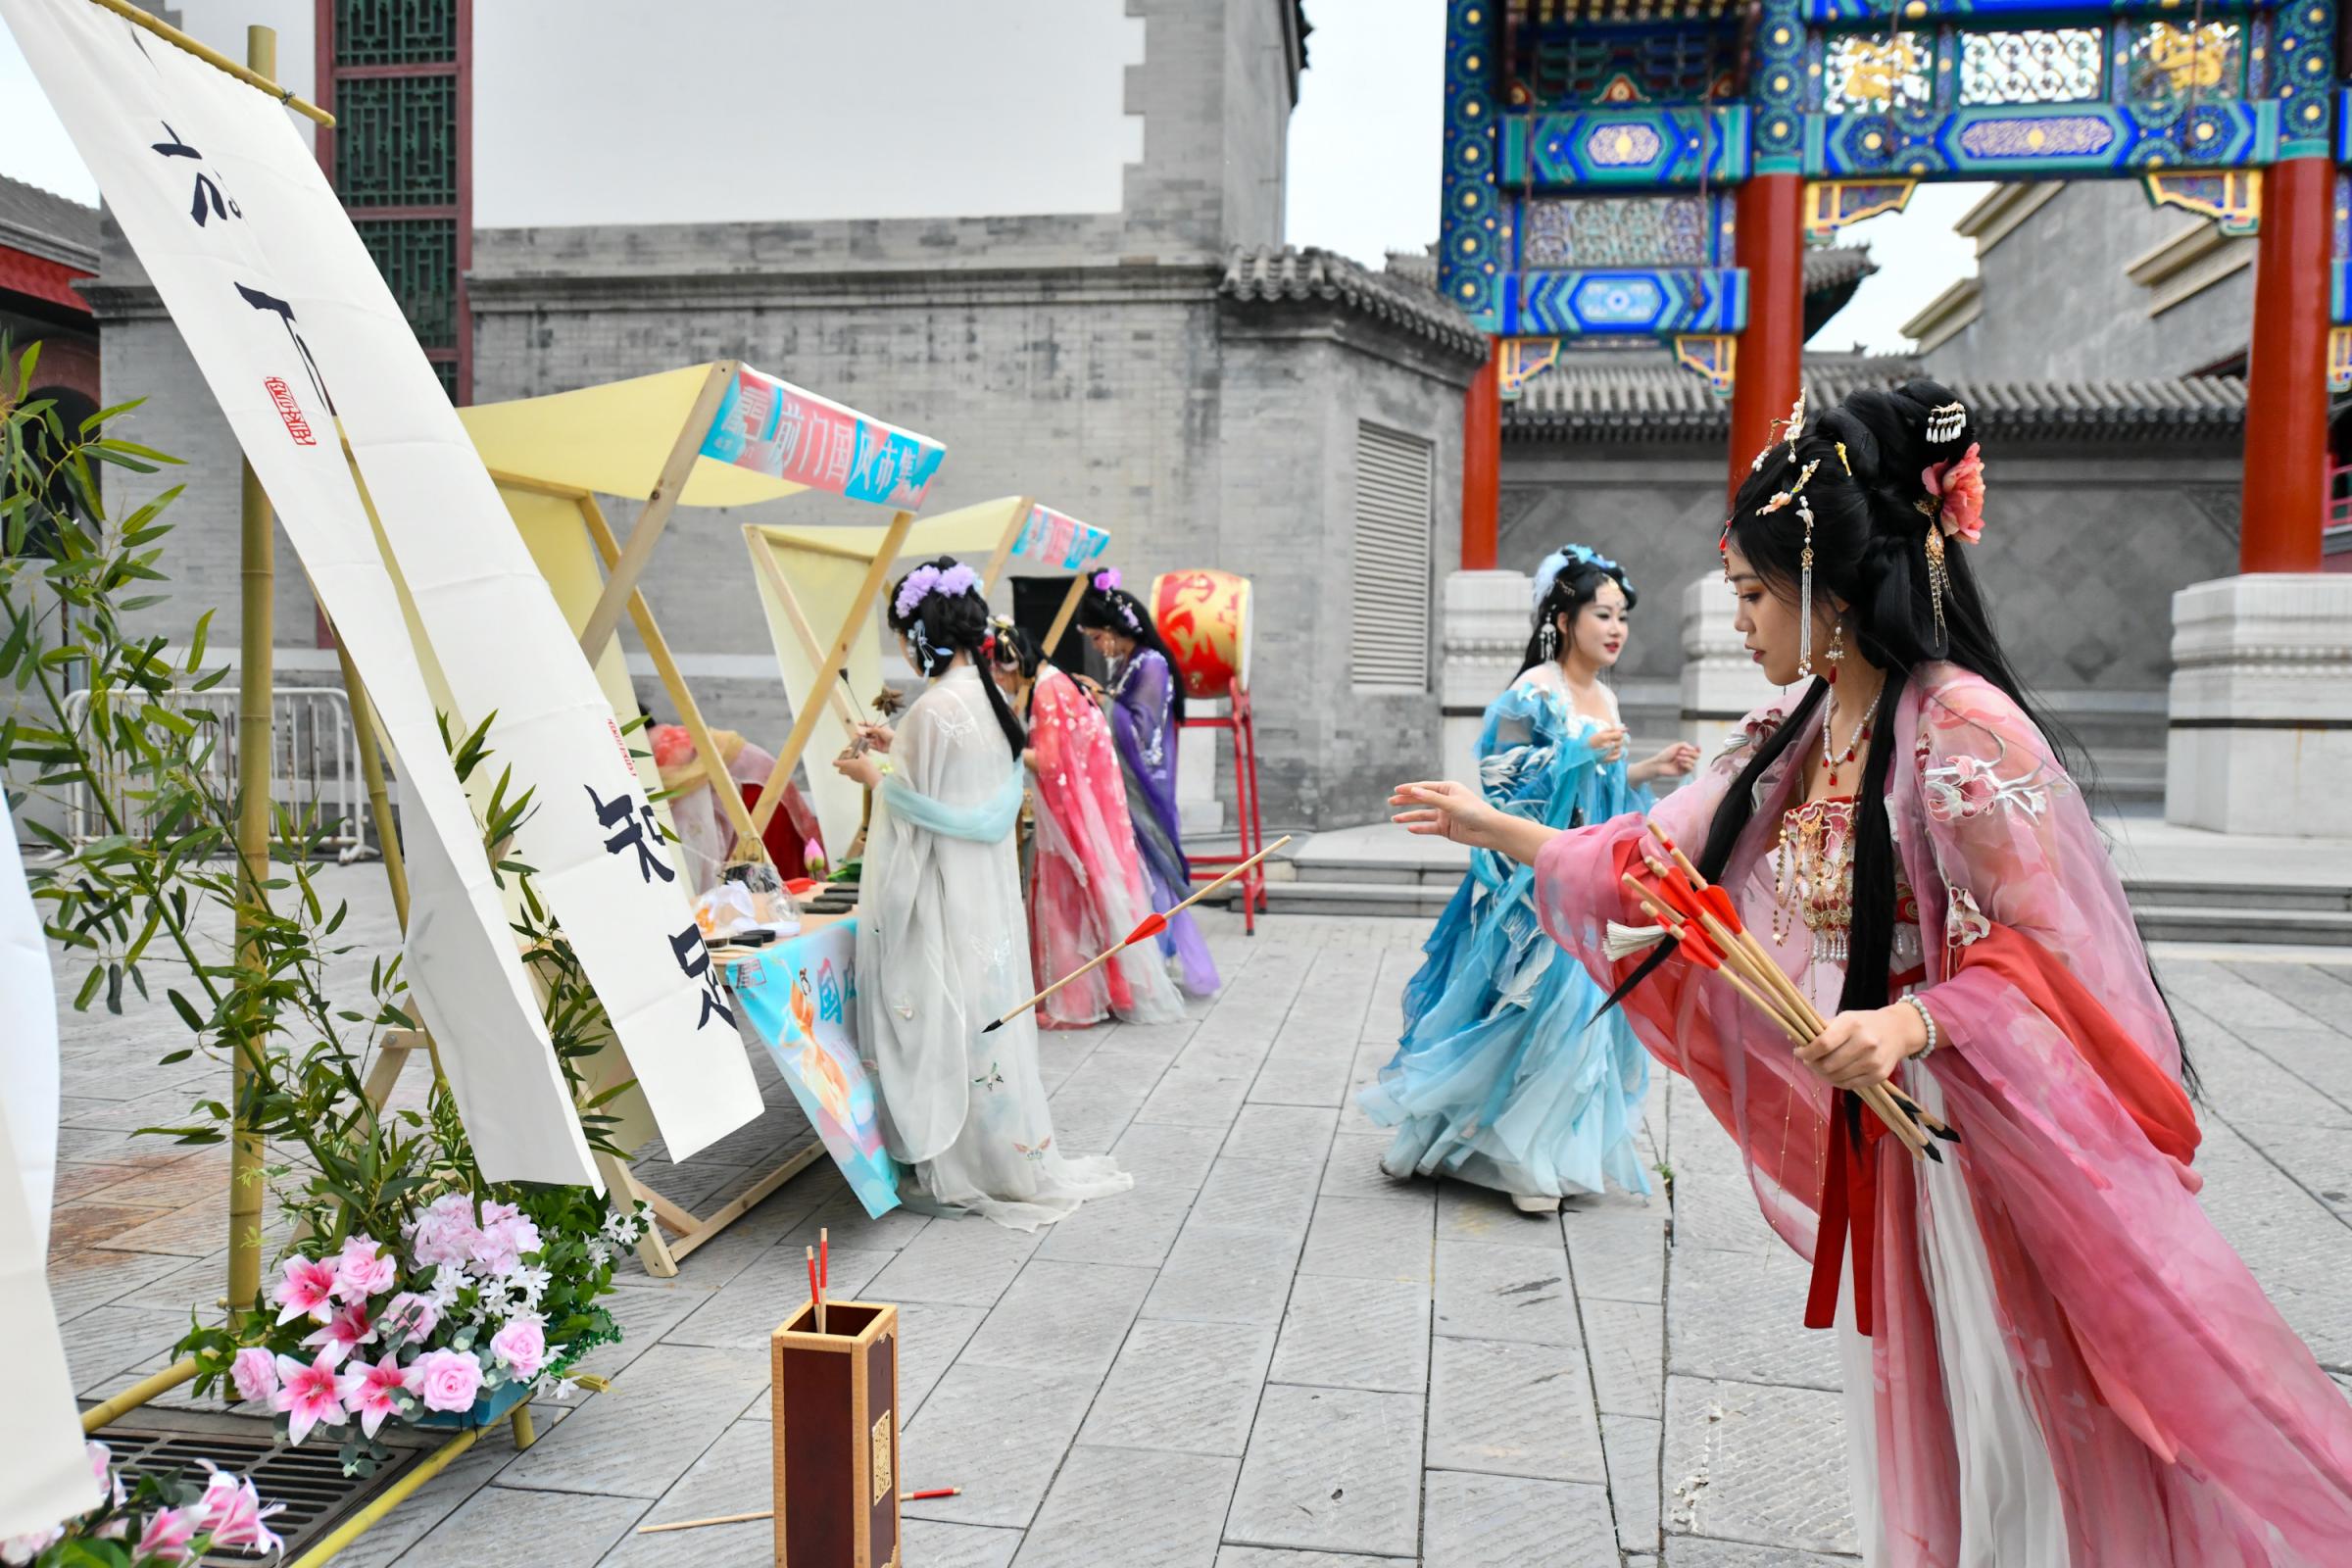 Танцевальное представление в национальном стиле, шоу талантов, парад ханьфу ...... Фестиваль национального стиля Цяньмэнь стартовал